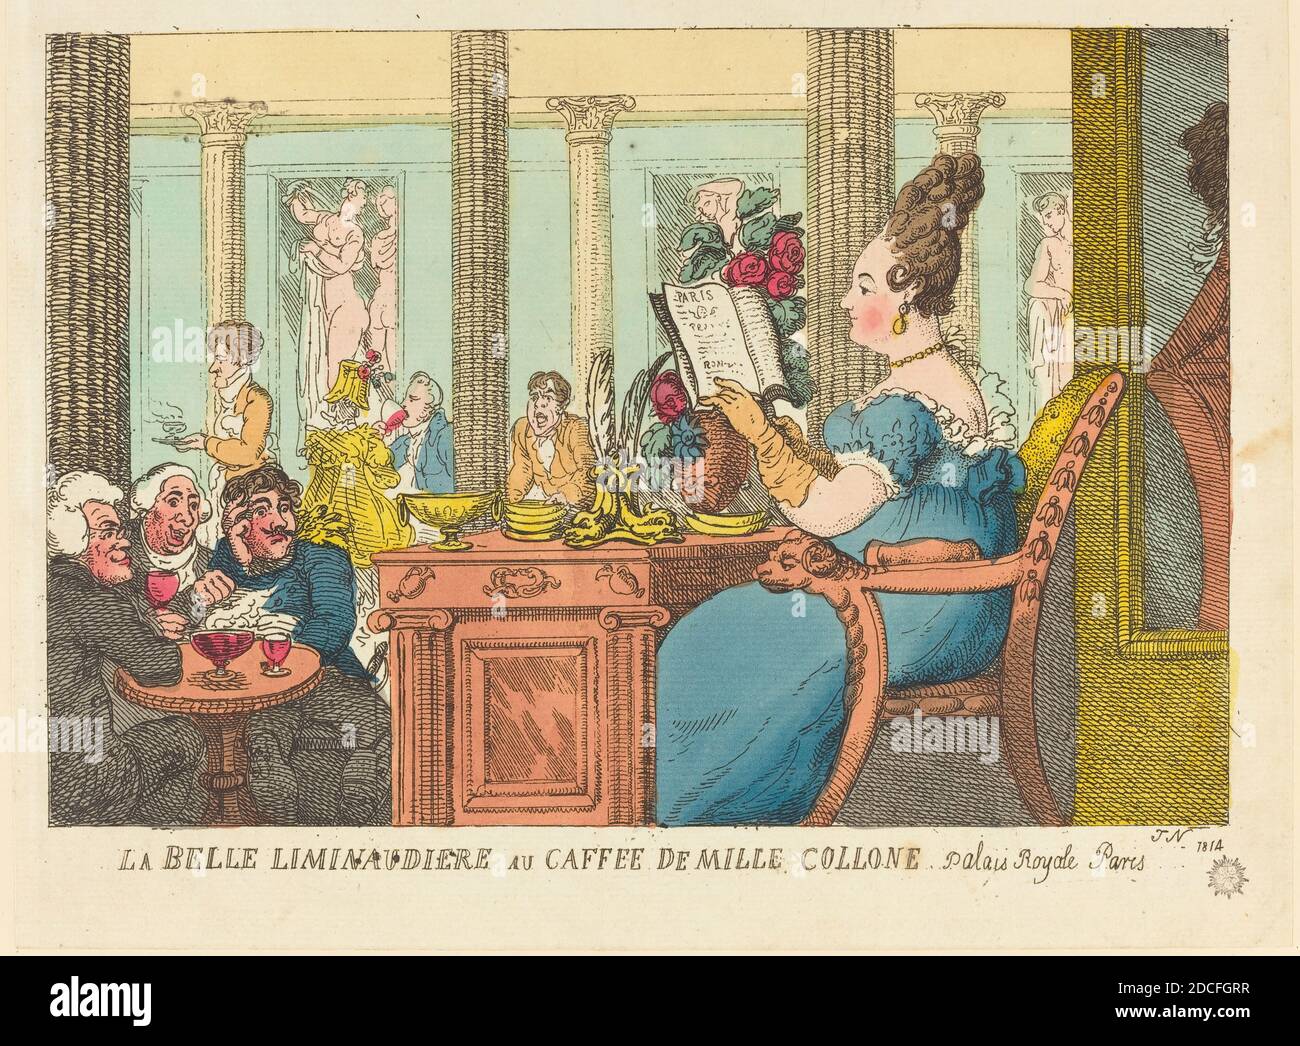 Thomas Rowlandson, (artist), British, 1756 - 1827, La Belle Limonaudiere au Cafe des Mille Colonnes, Palais Royal, Paris, 1814, hand-colored etching Stock Photo